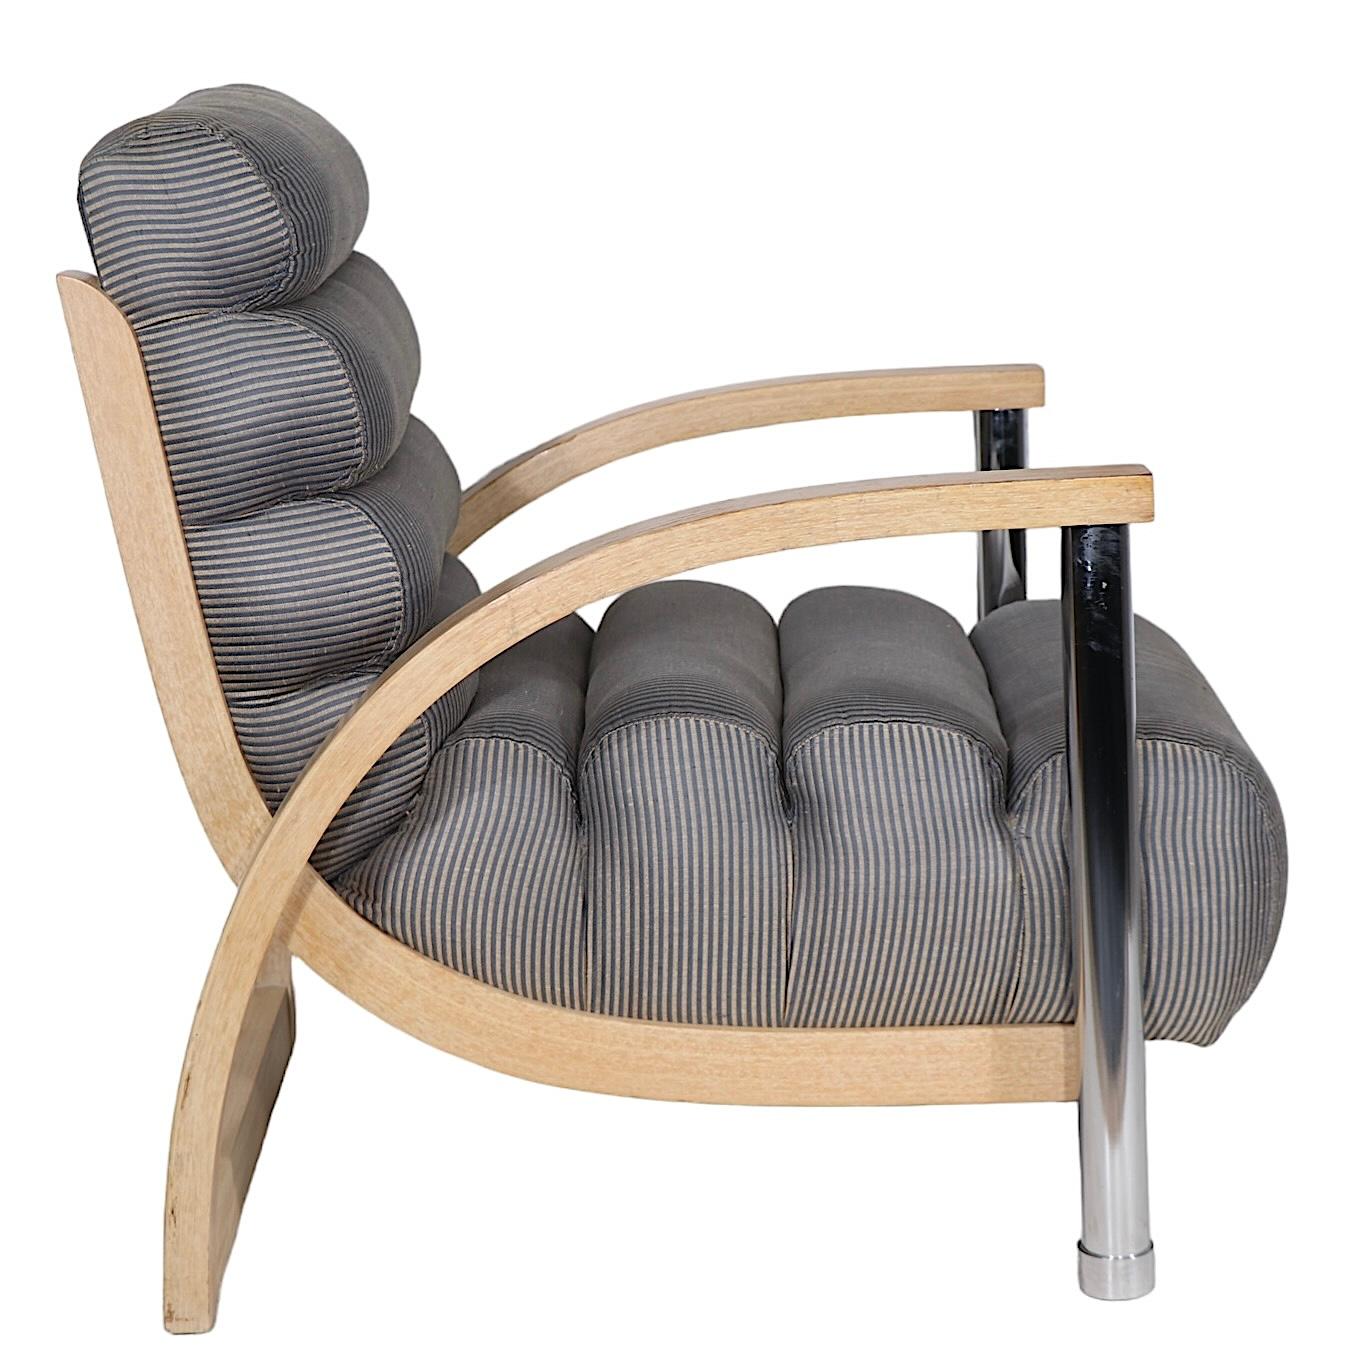 Voguish Hollywood Regency, Art Deco Revival, Post Modern Lounge Chair  entworfen von Jay Spectre für Century Furniture, ca. 1970/1980er Jahre. Der Stuhl zeichnet sich durch dramatische, durchgehende Arm- und Rückenlehnen, massive, verchromte